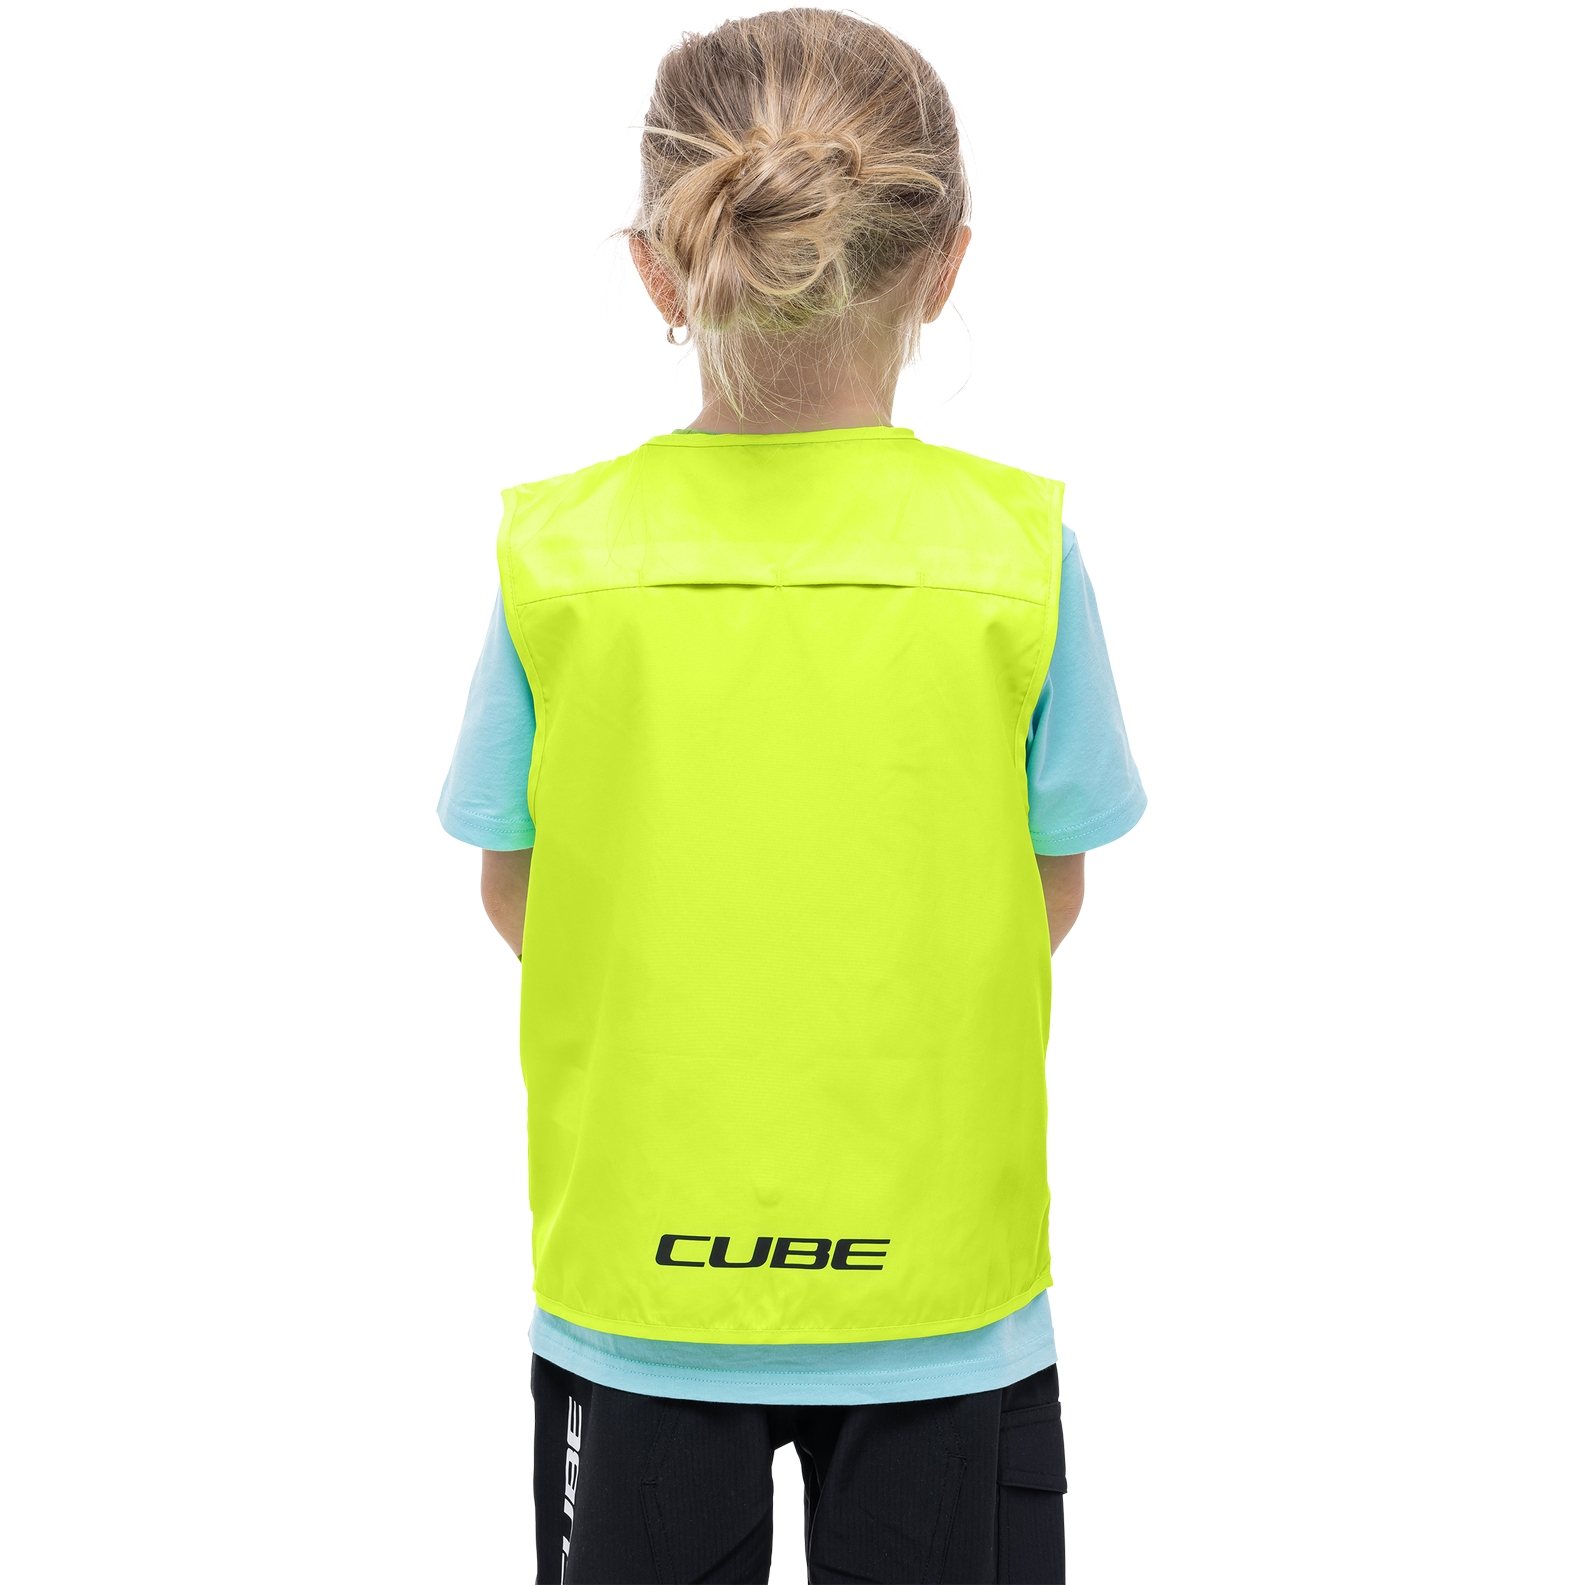 Cube Junior Safety Weste Kinder Fahrrad Sicherheitsweste gelb